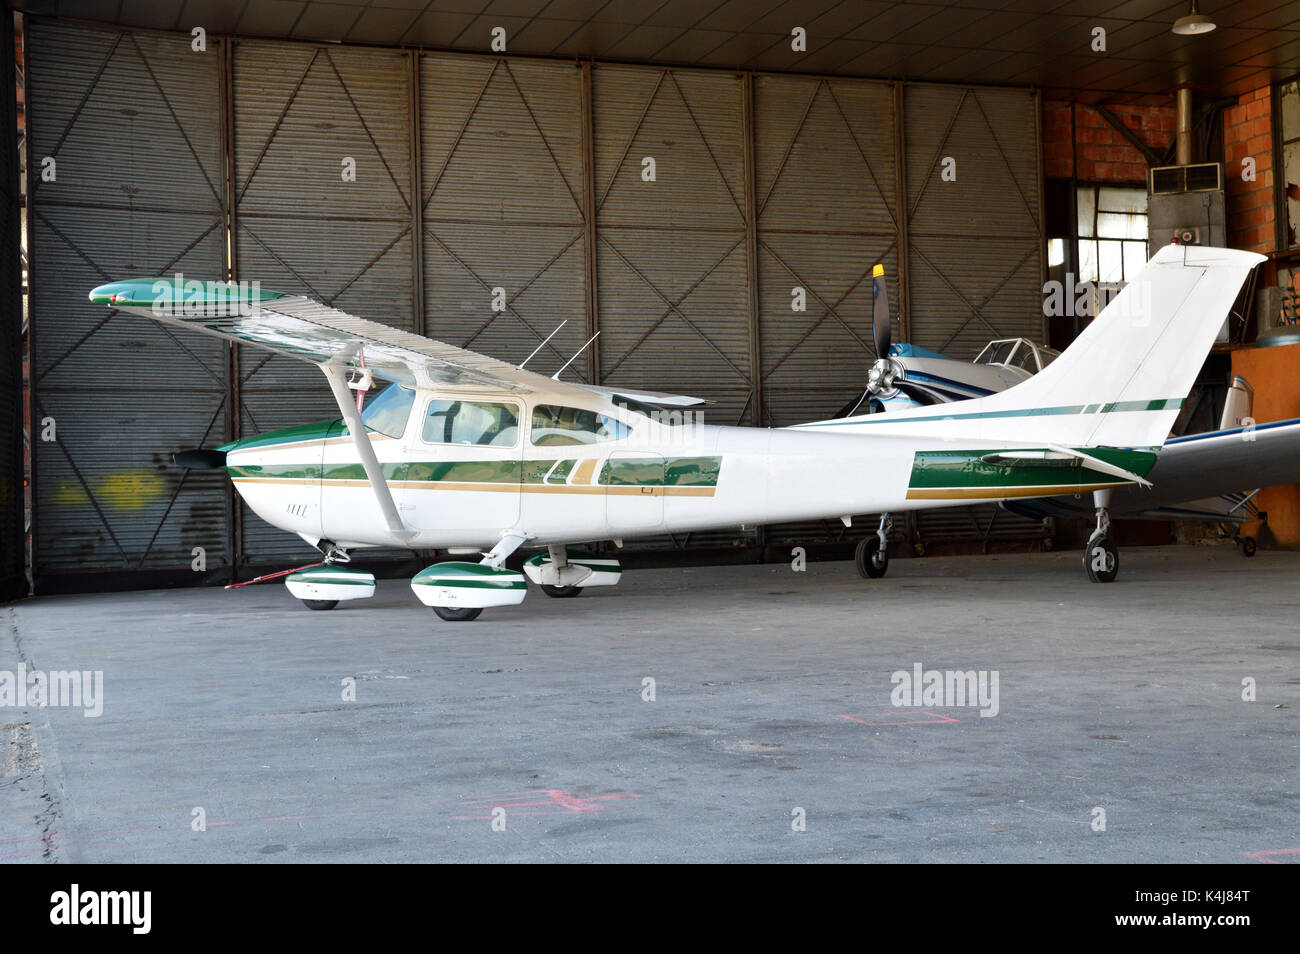 Ein kleines Flugzeug im Hangar Flugzeug geparkt. Stockfoto